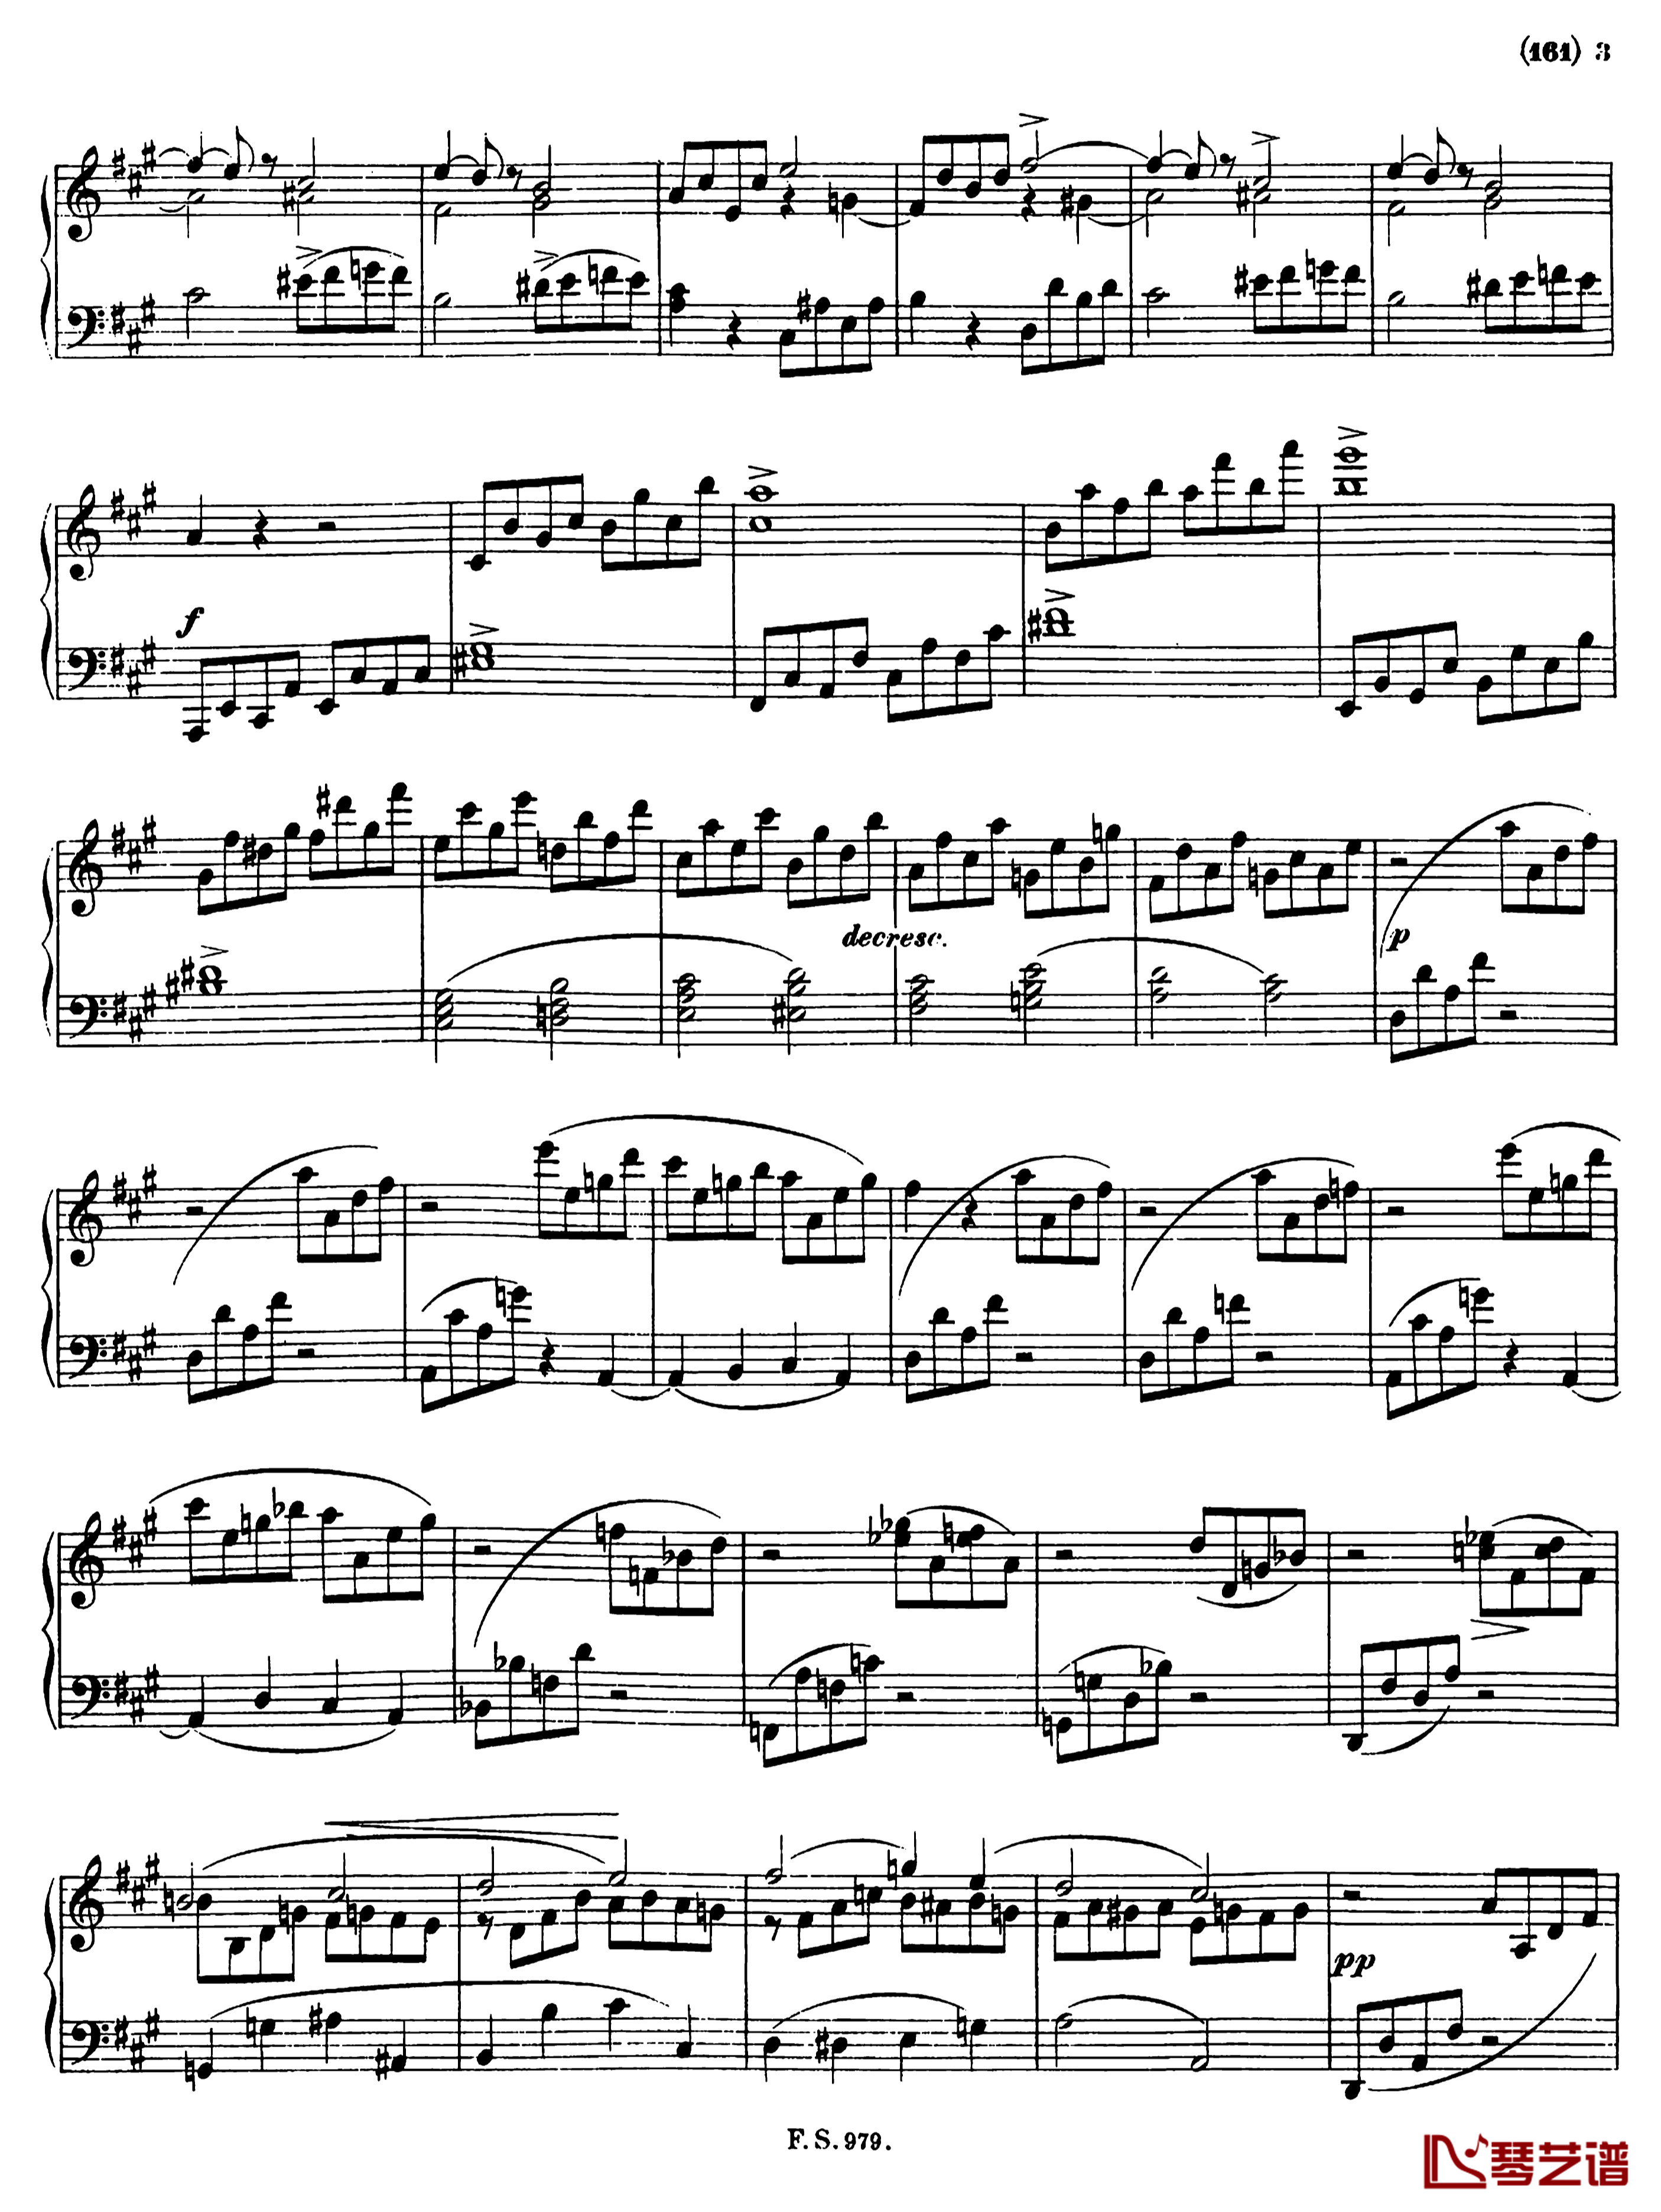 升f小调钢琴奏鸣曲D.571钢琴谱-李斯特-舒伯特2